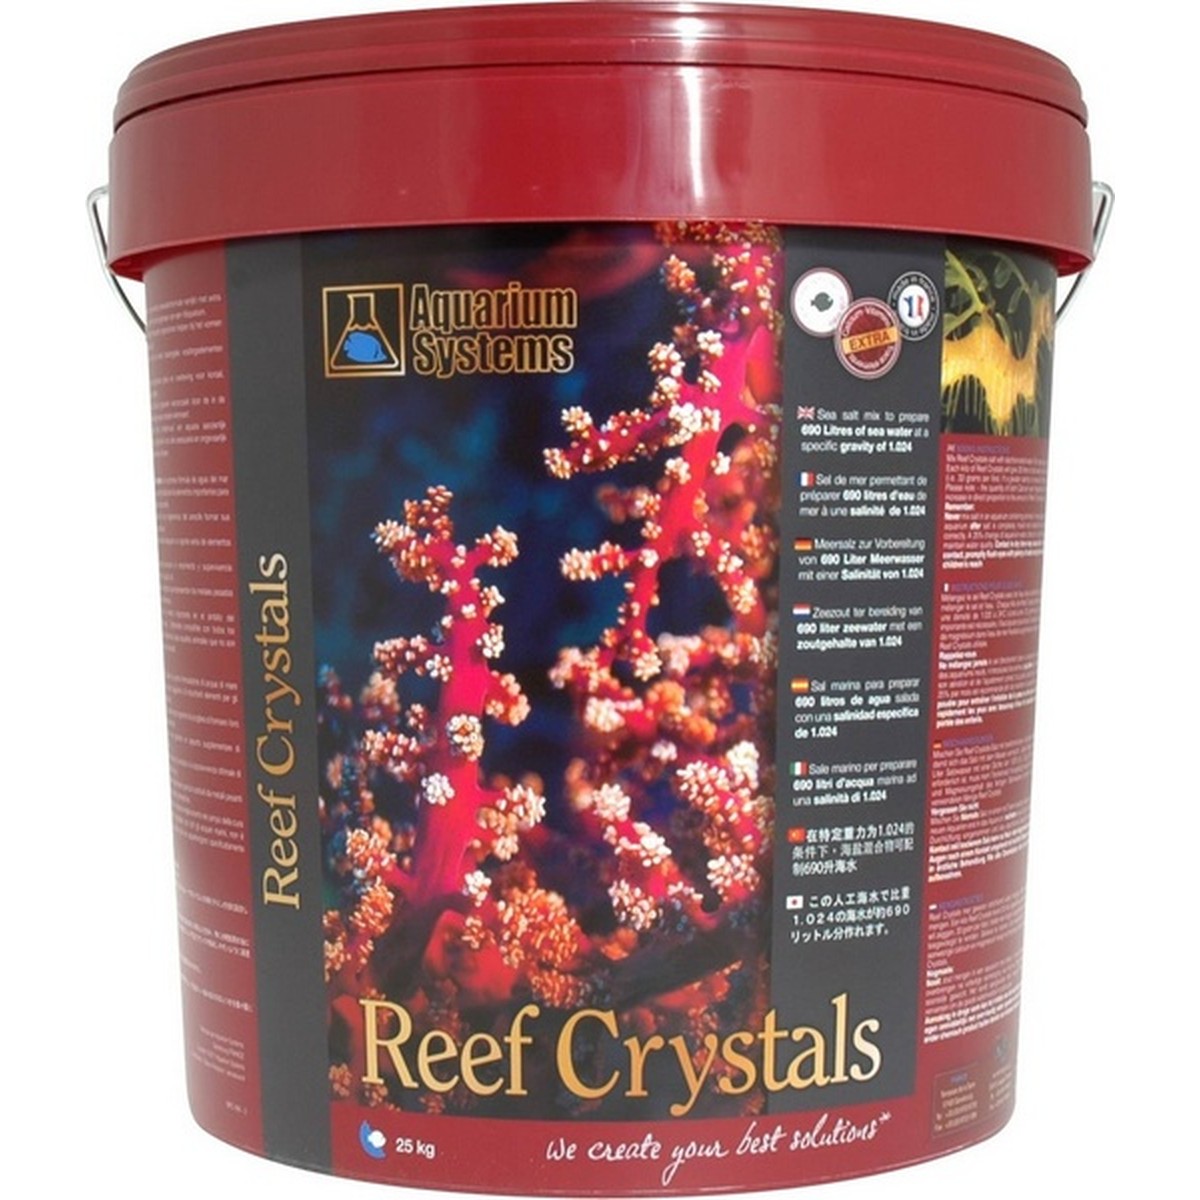   Reef Crystals sel synthétique. 25kg 750l  25kg